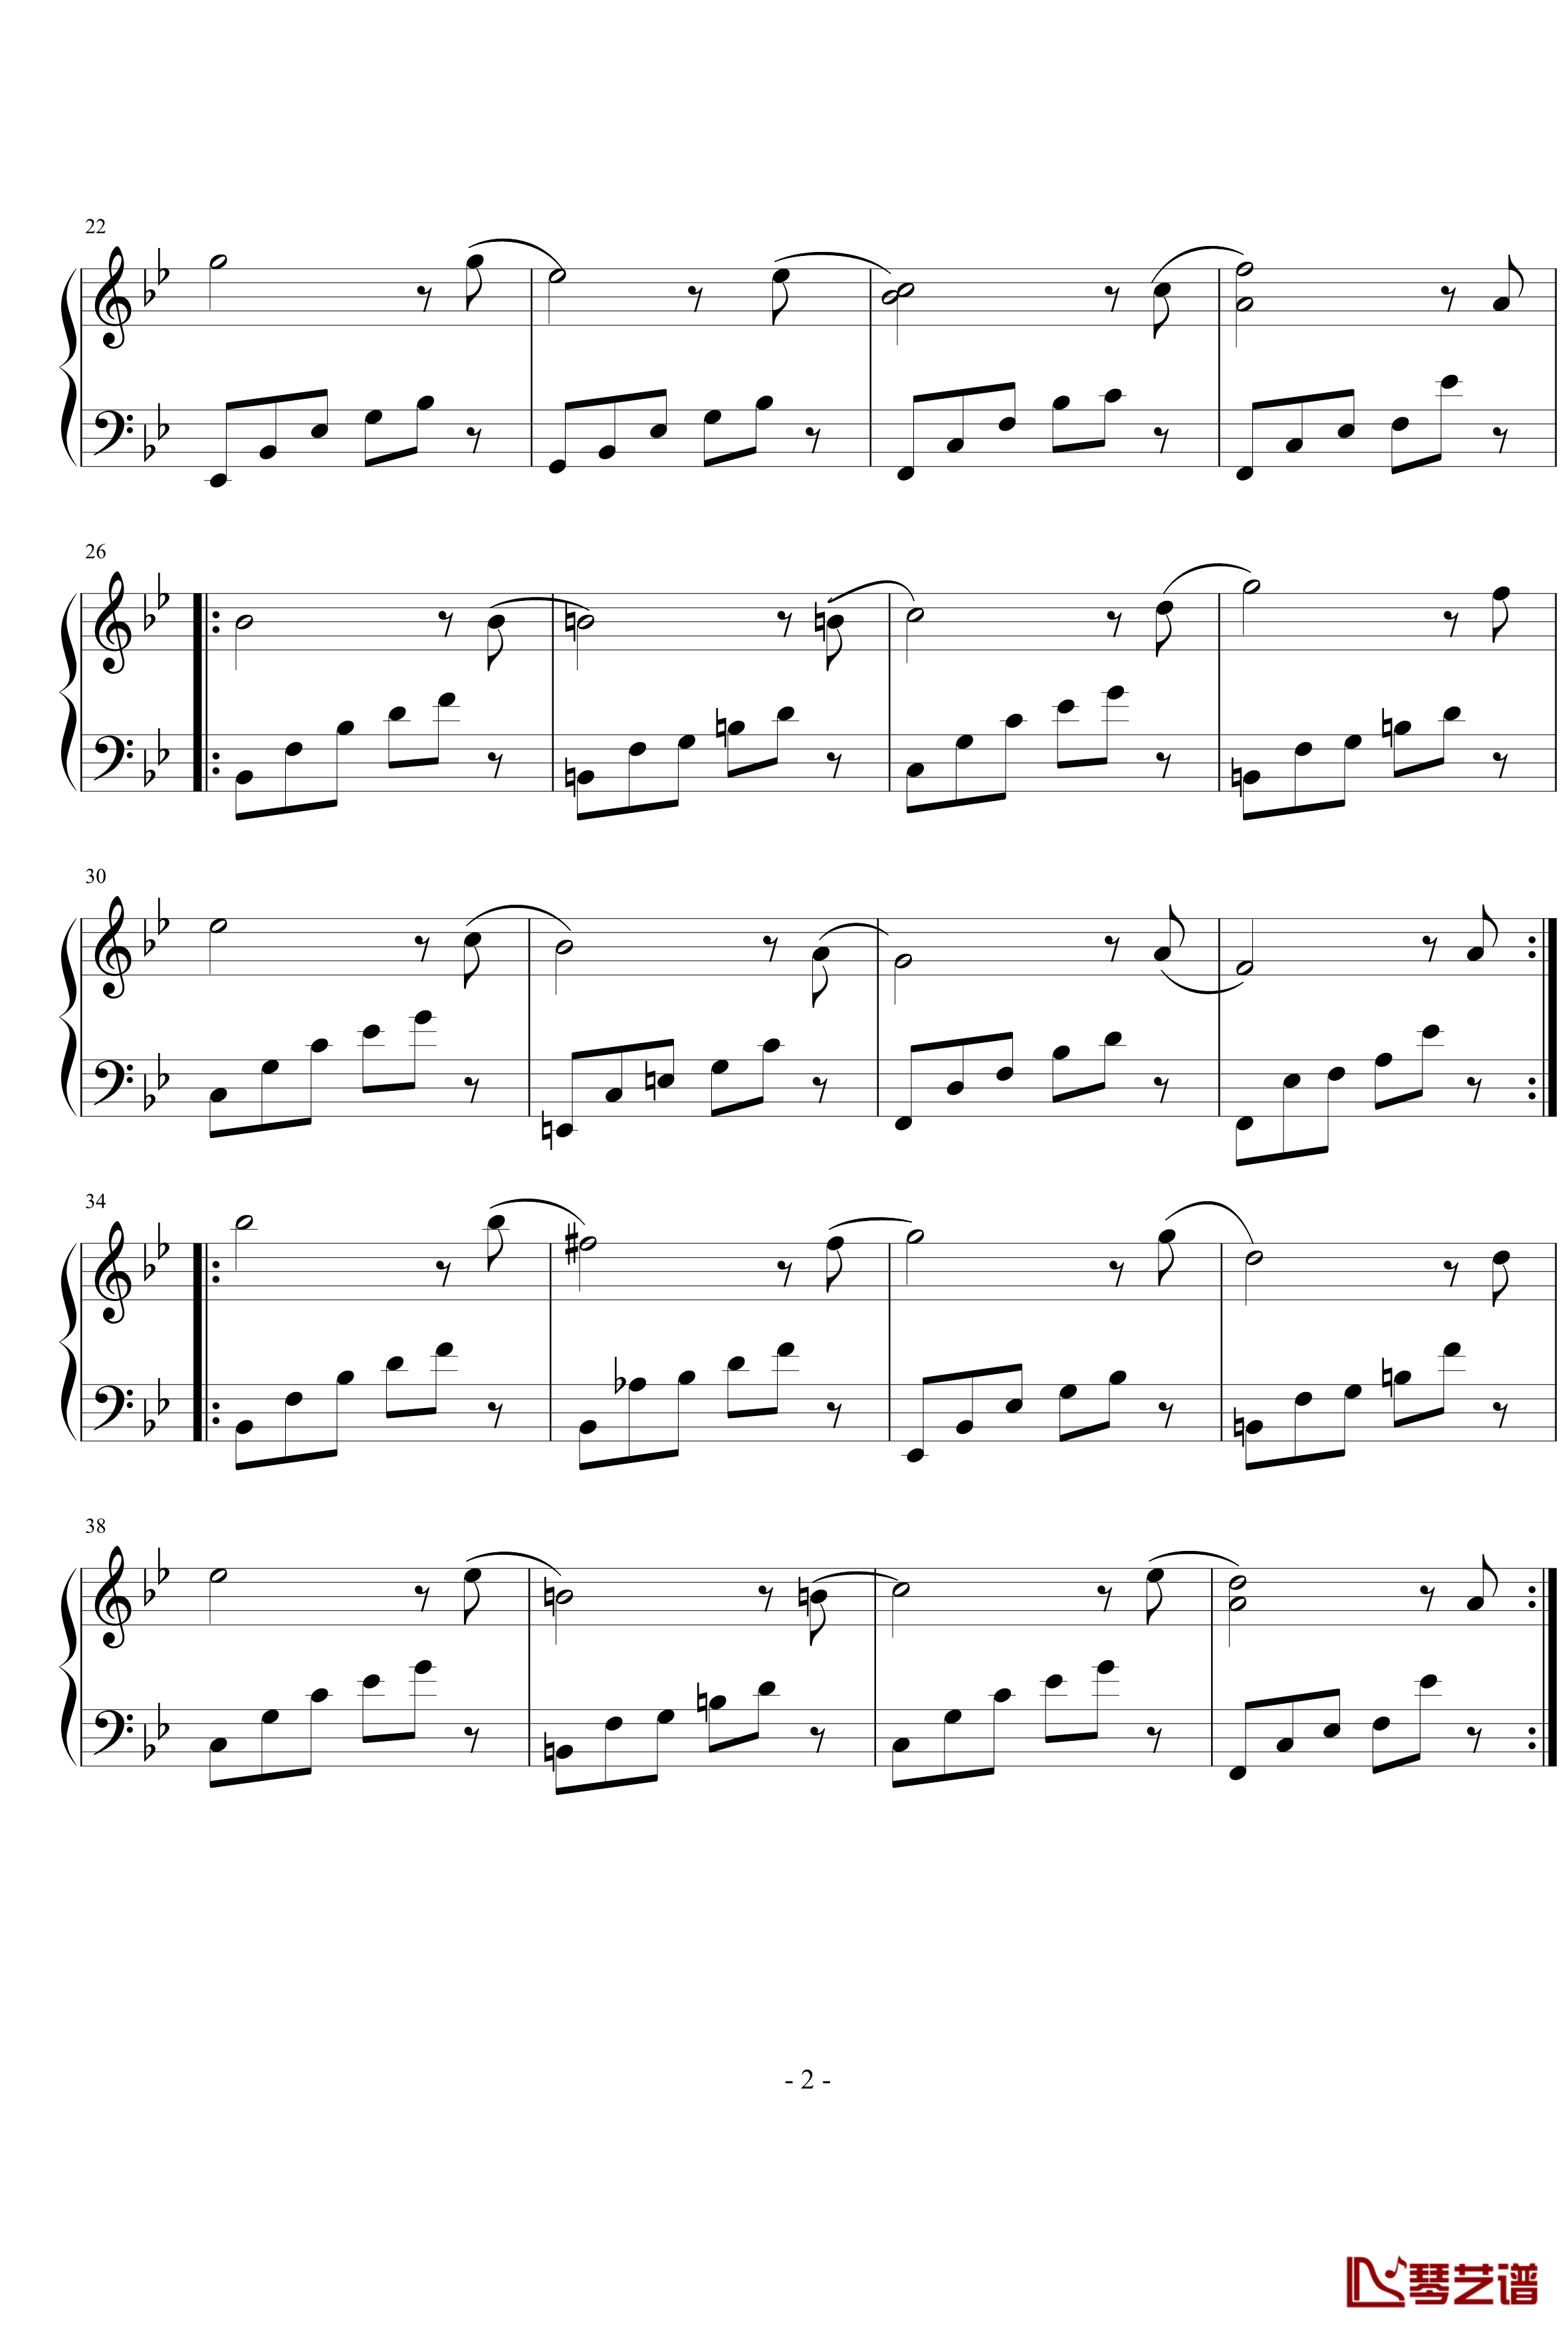 简短的练习曲钢琴谱-nyride